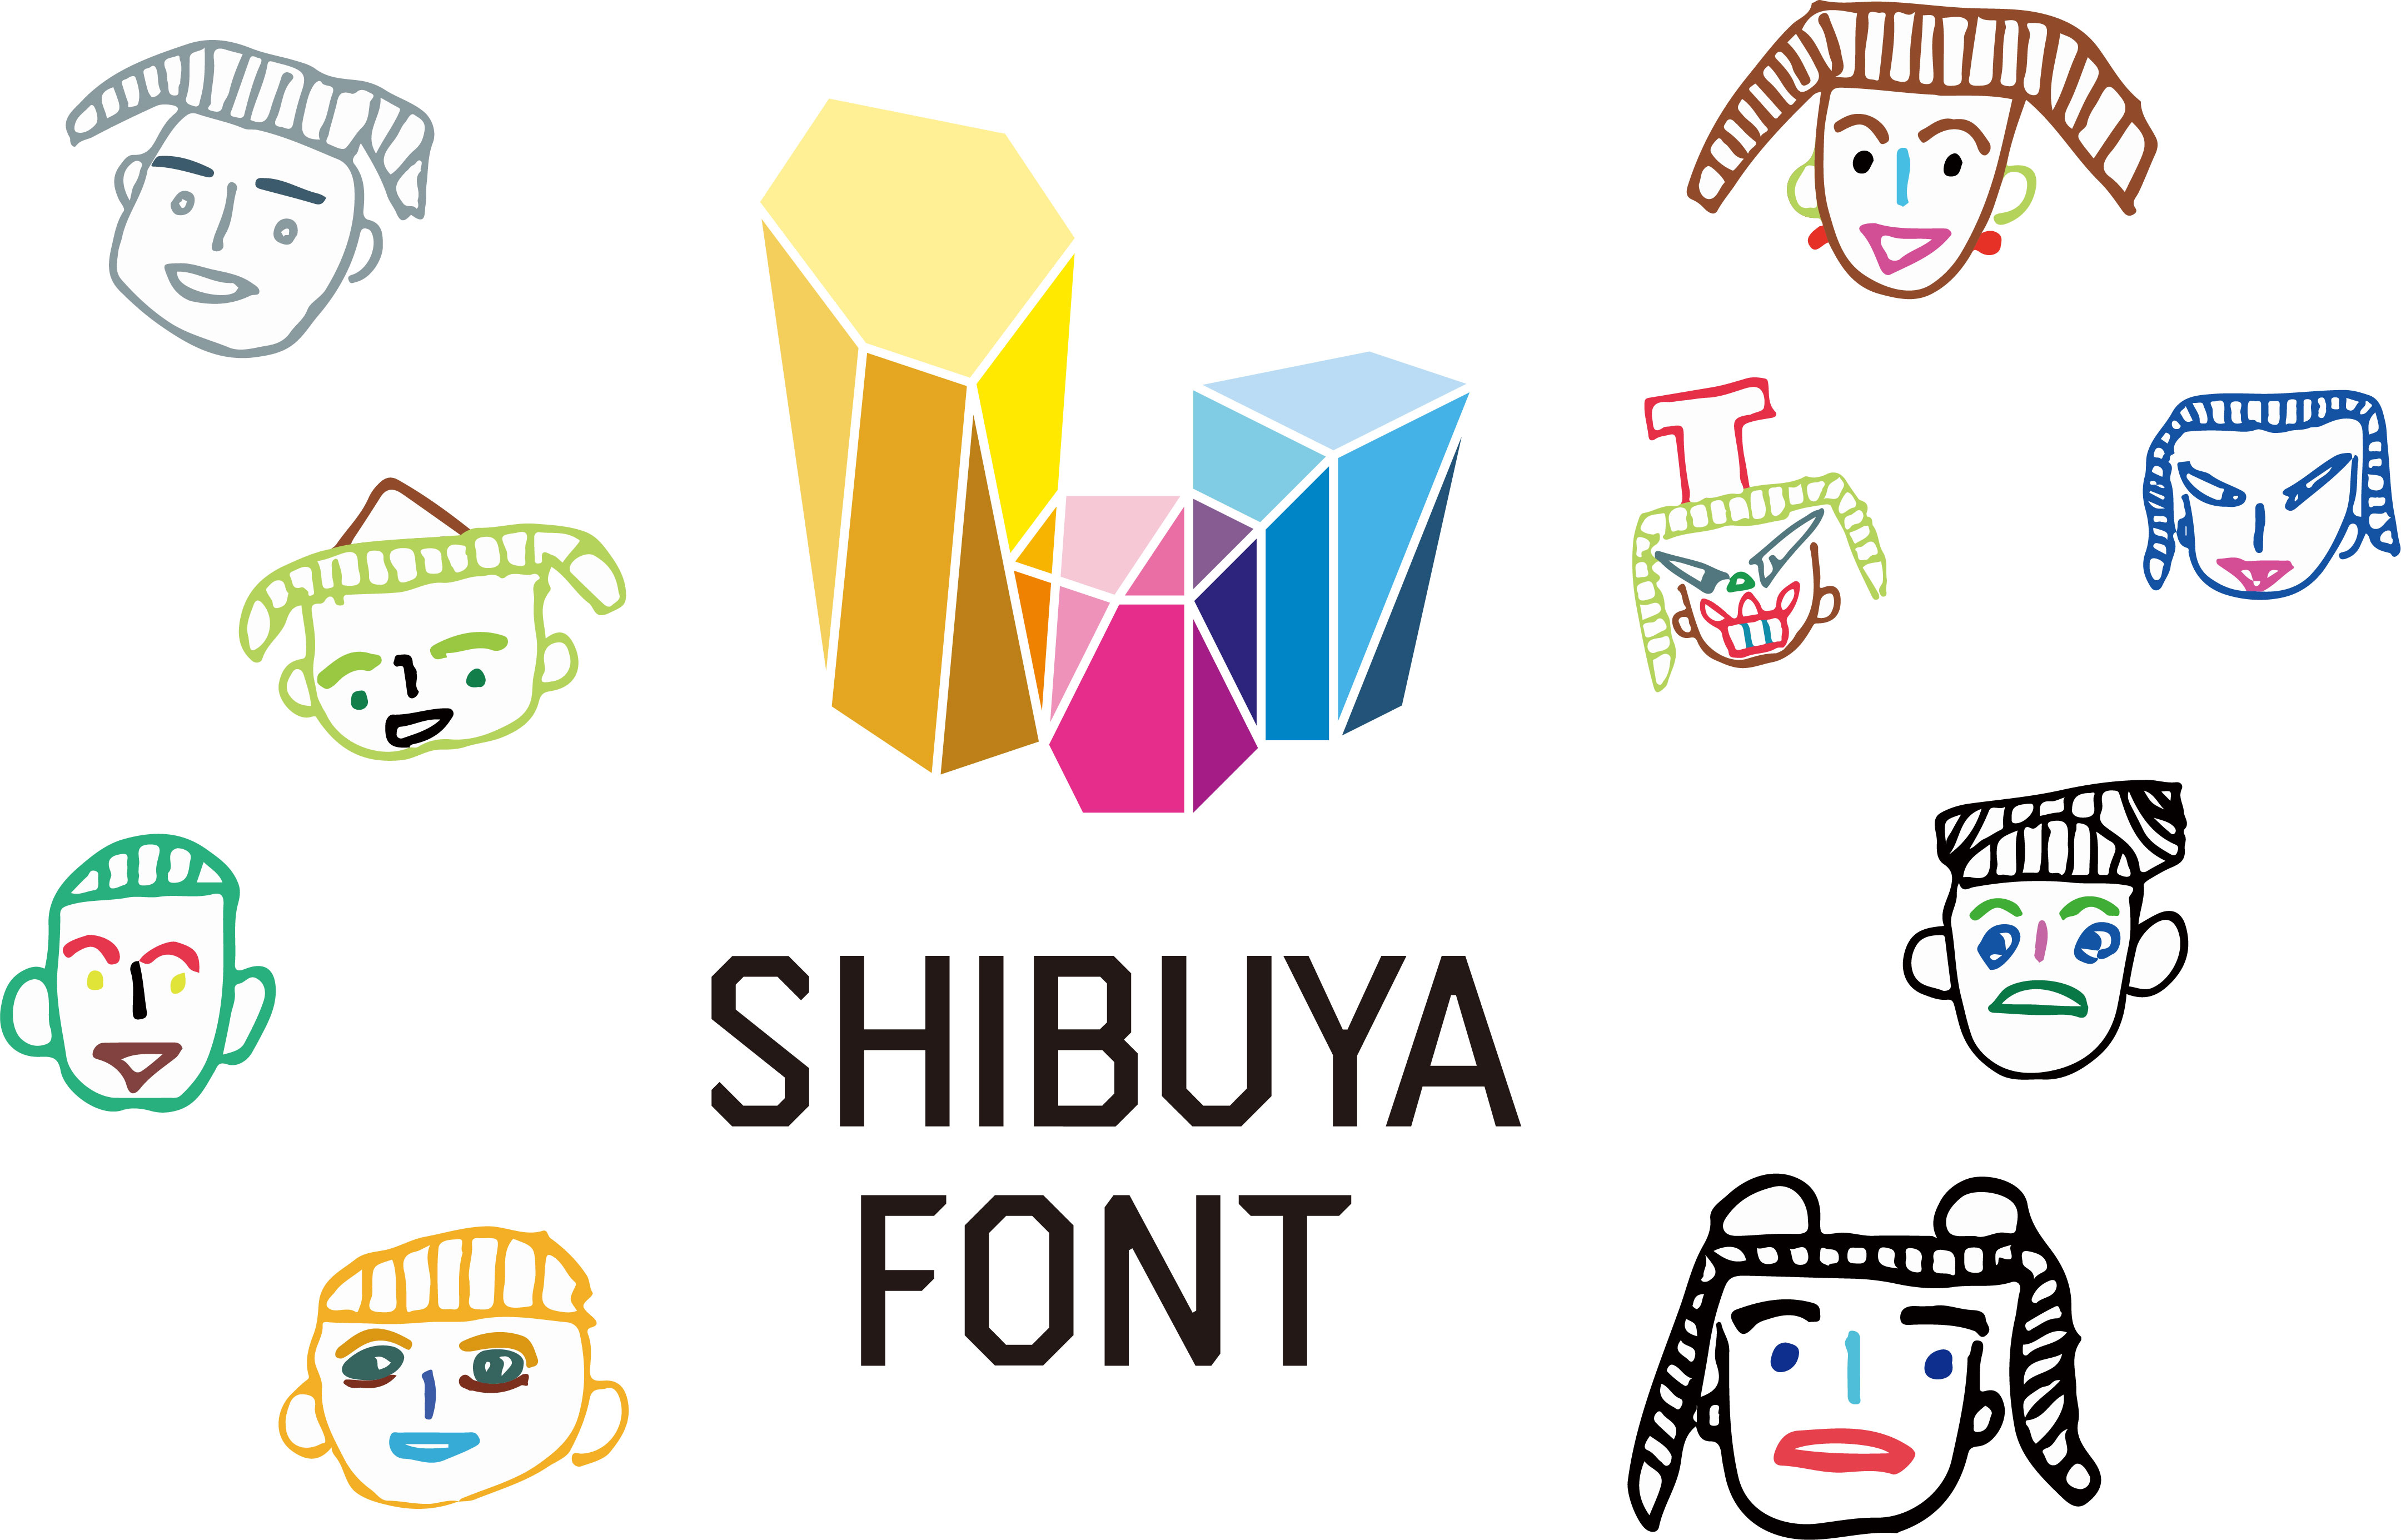 シブヤフォントとは   Collaboration with Shibuya Font